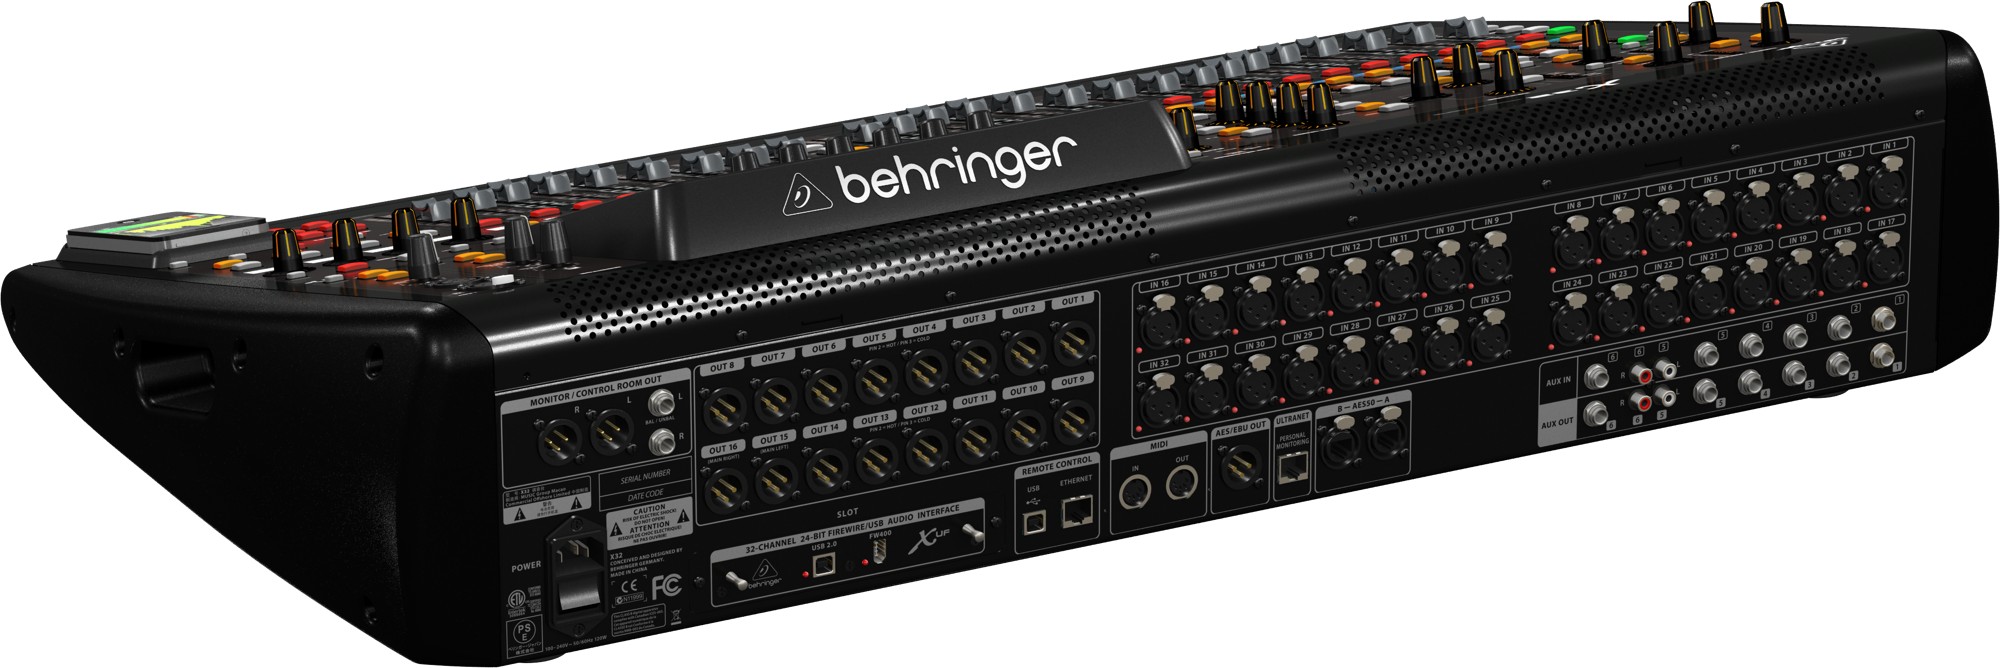 Микшерный пульт behringer x32. Цифровой микшерный пульт Behringer x32. Микшерный пульт Behringer x32 Compact. Цифровой пульт Behringer x32. Цифровой пульт Behringer x32 Compact.